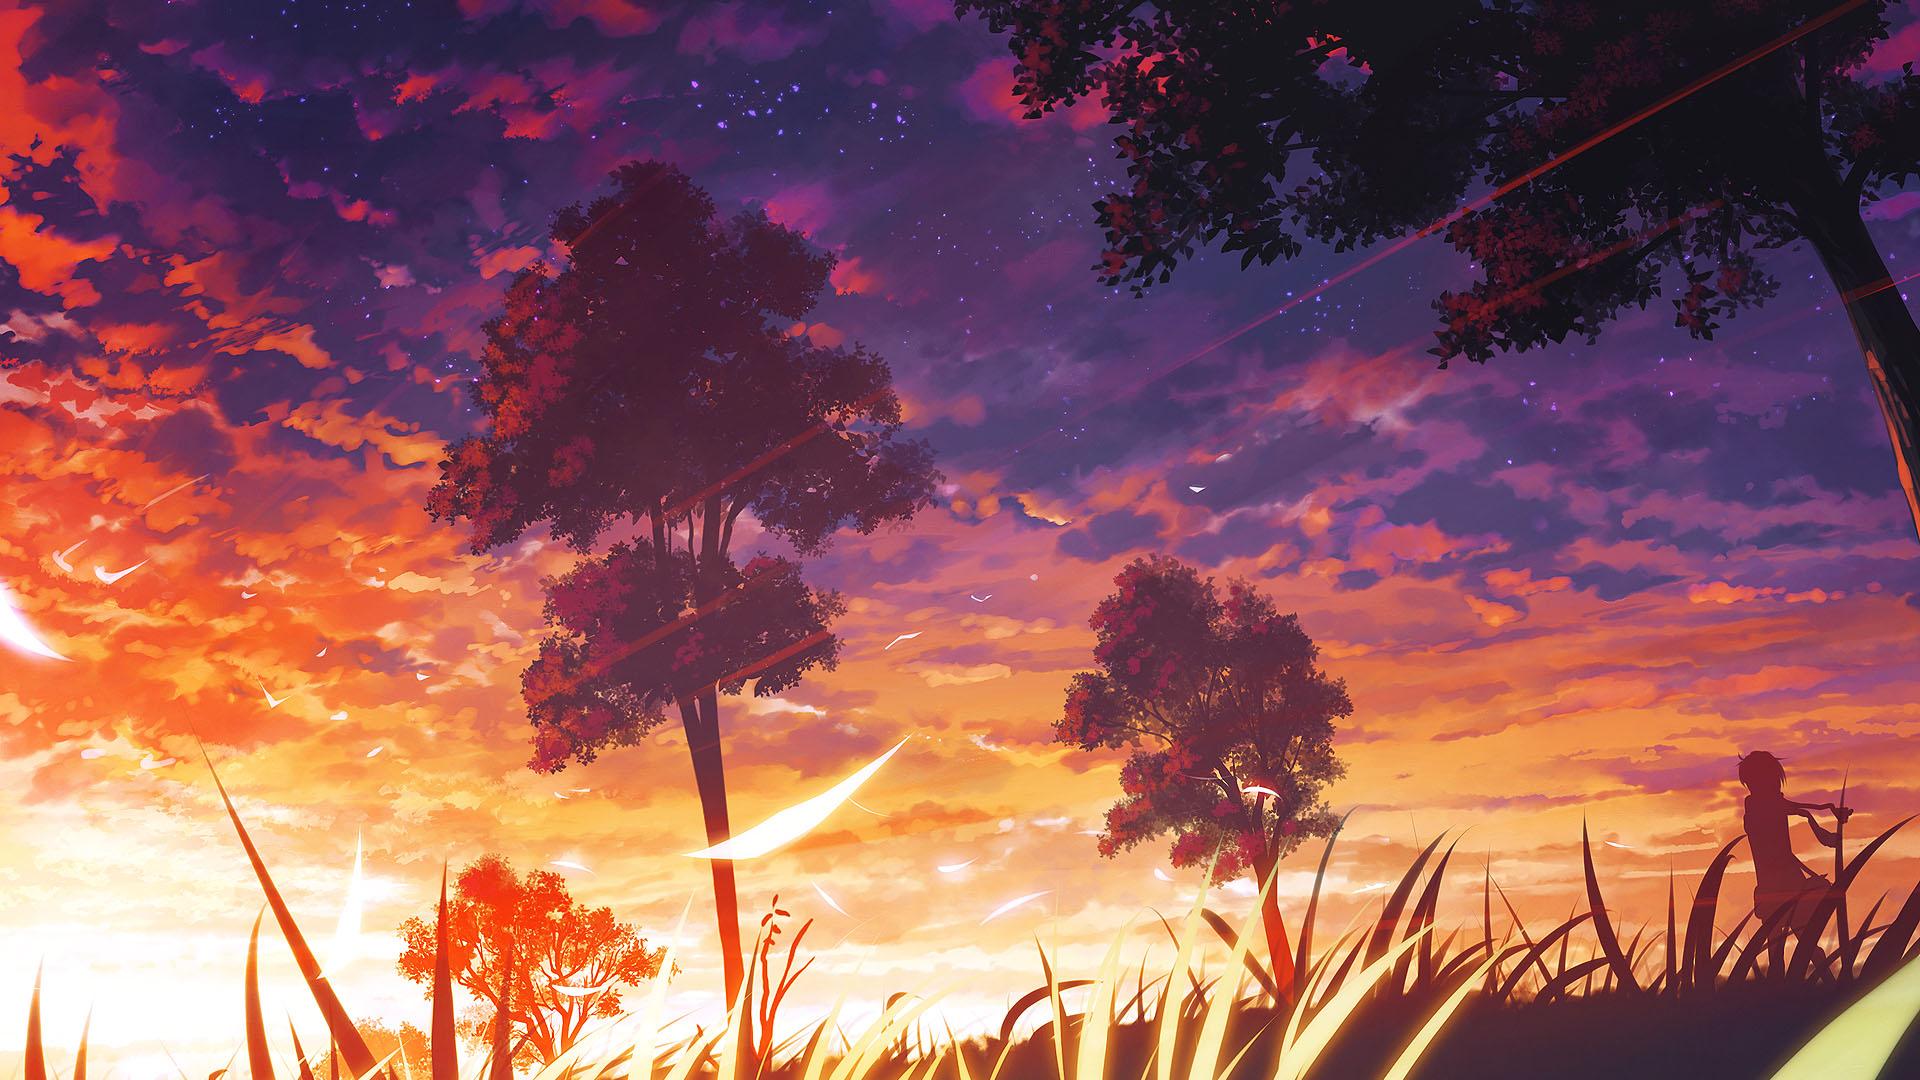 Hãy cùng chiêm ngưỡng bức hình nền đầy lãng mạn với không gian hoàng hôn phức tạp và tuyệt đẹp từ Anime. Những màu sắc ấn tượng cùng cảnh quan đẹp như tranh vẽ sẽ khiến bạn thực sự ngây ngất.